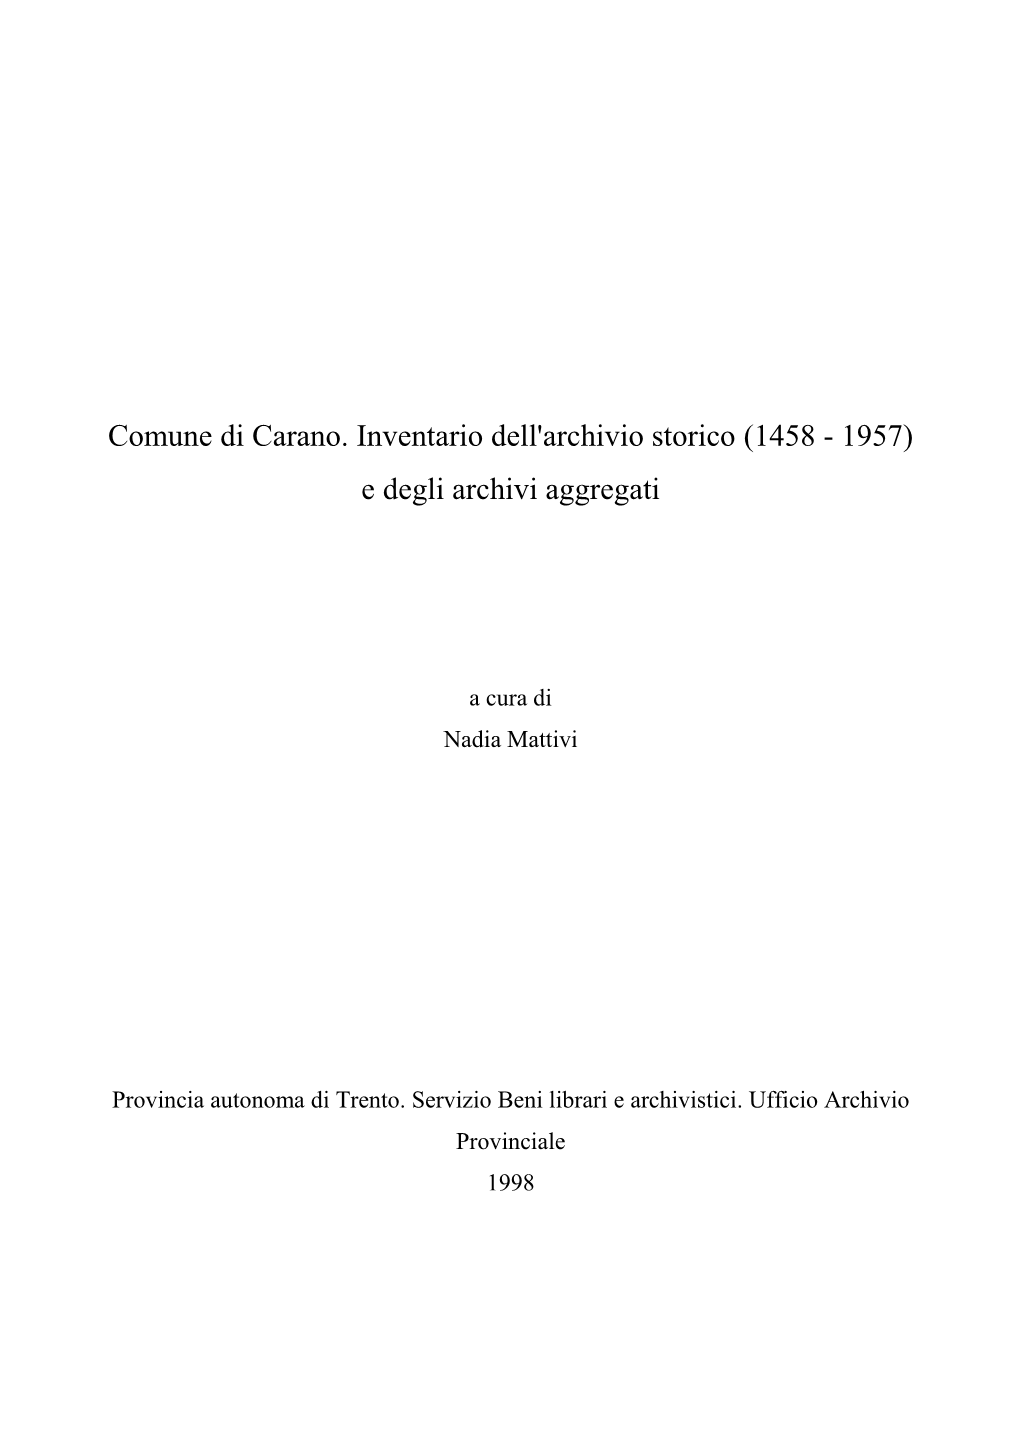 Comune Di Carano. Inventario Dell'archivio Storico (1458 - 1957) E Degli Archivi Aggregati